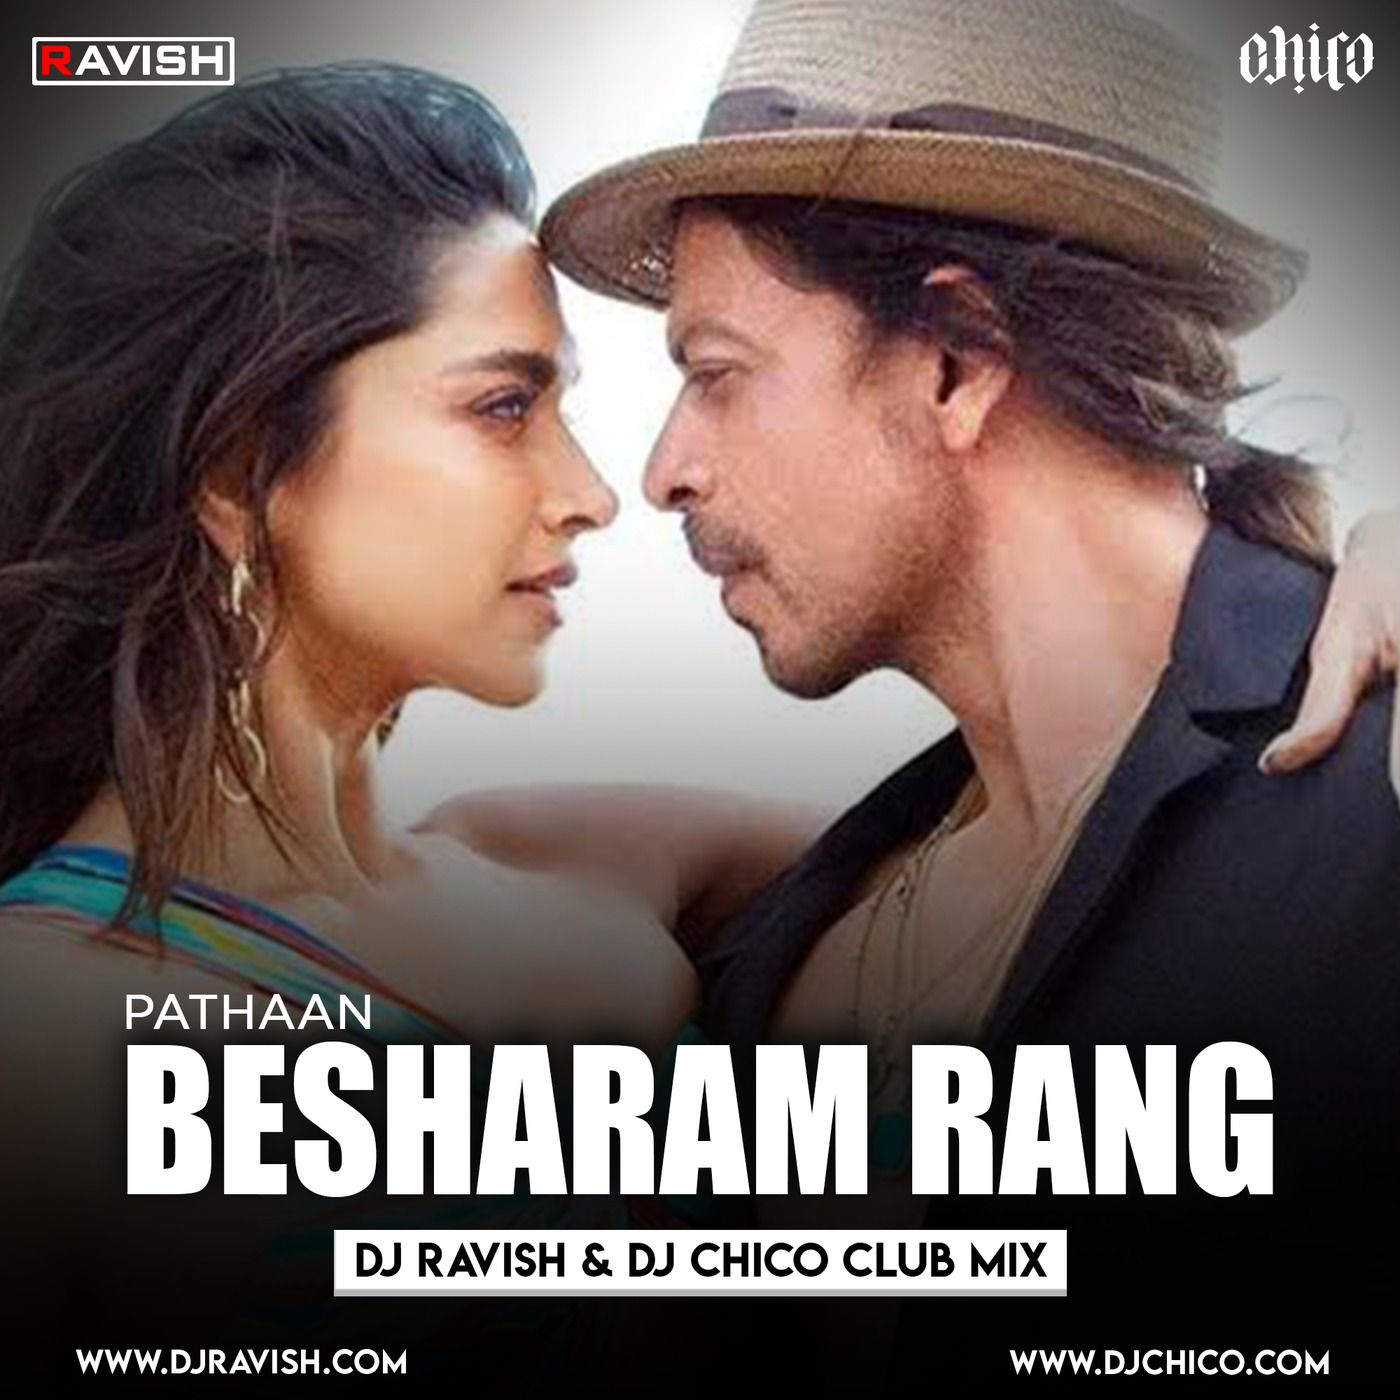 Pathaan - Besharam Rang (DJ Ravish & DJ Chico Club Mix)